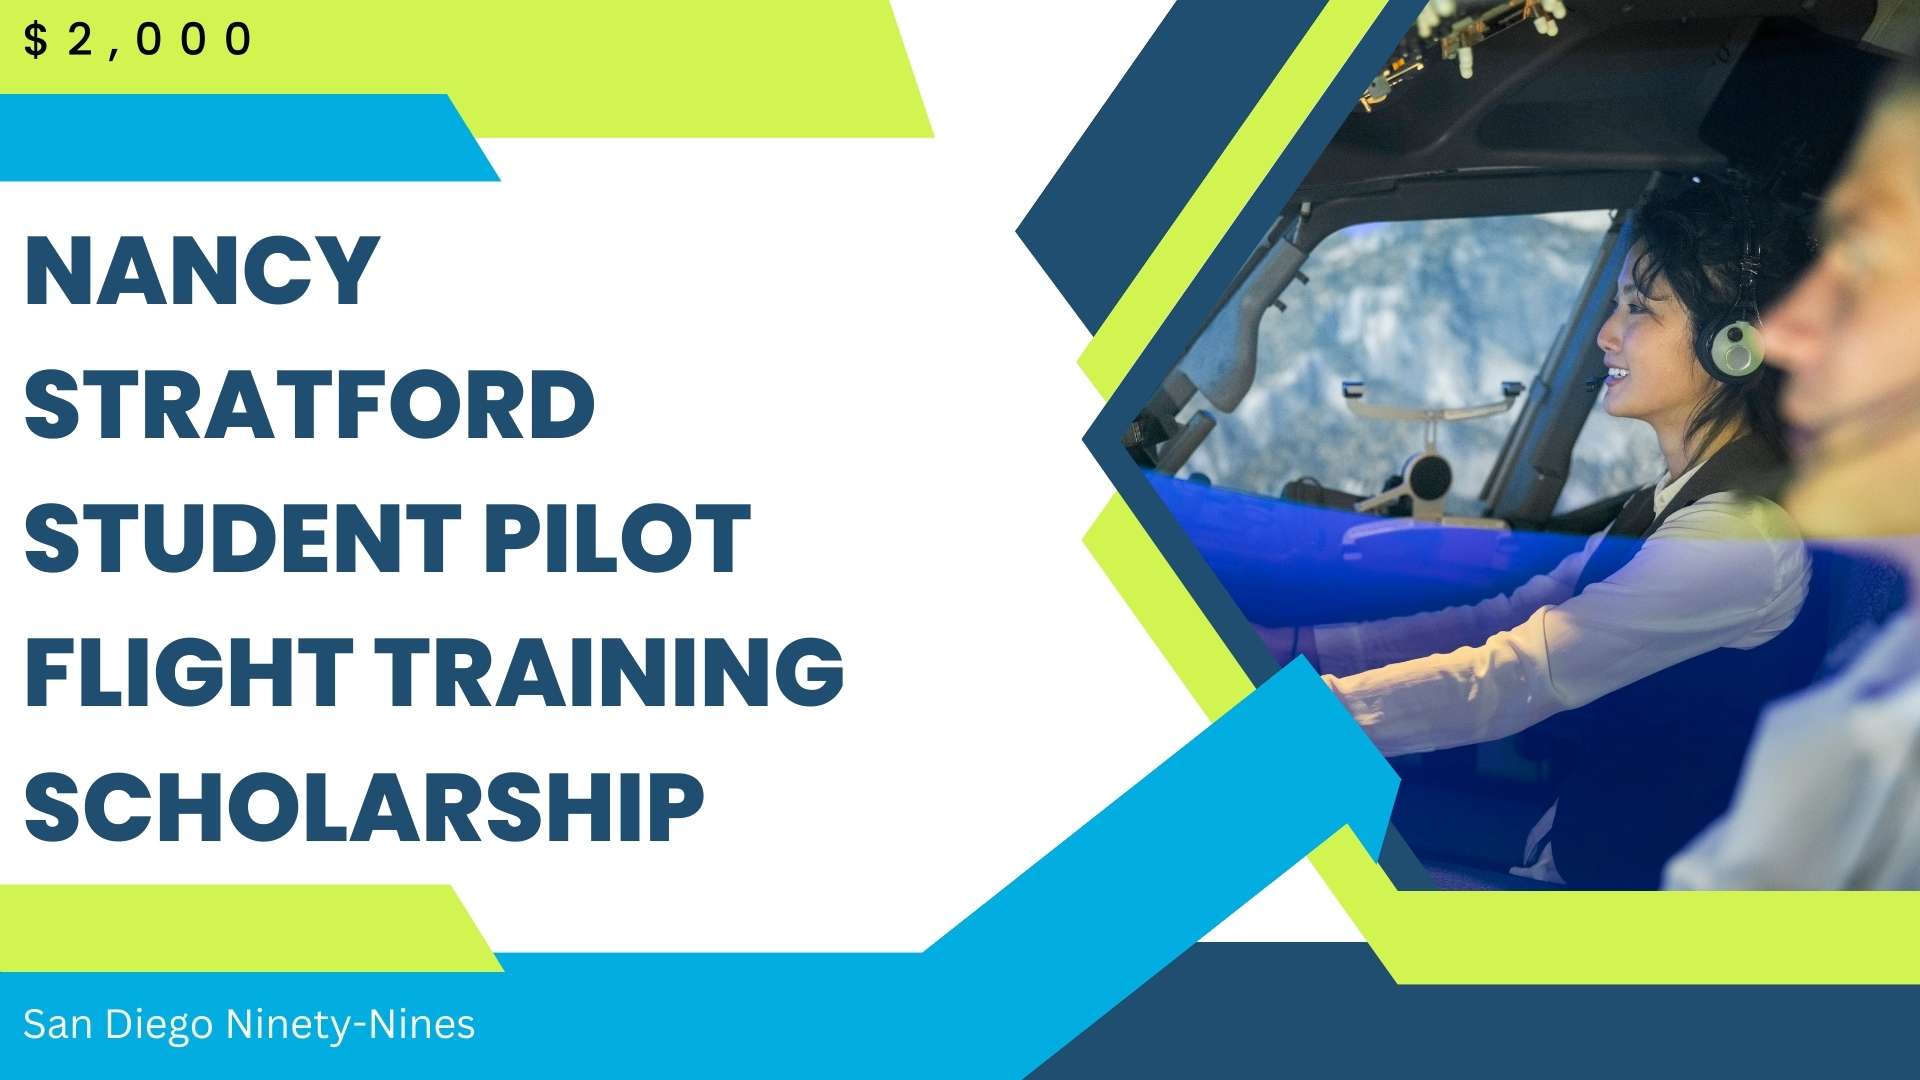 Nancy Stratford Student Pilot Flight Training Scholarship